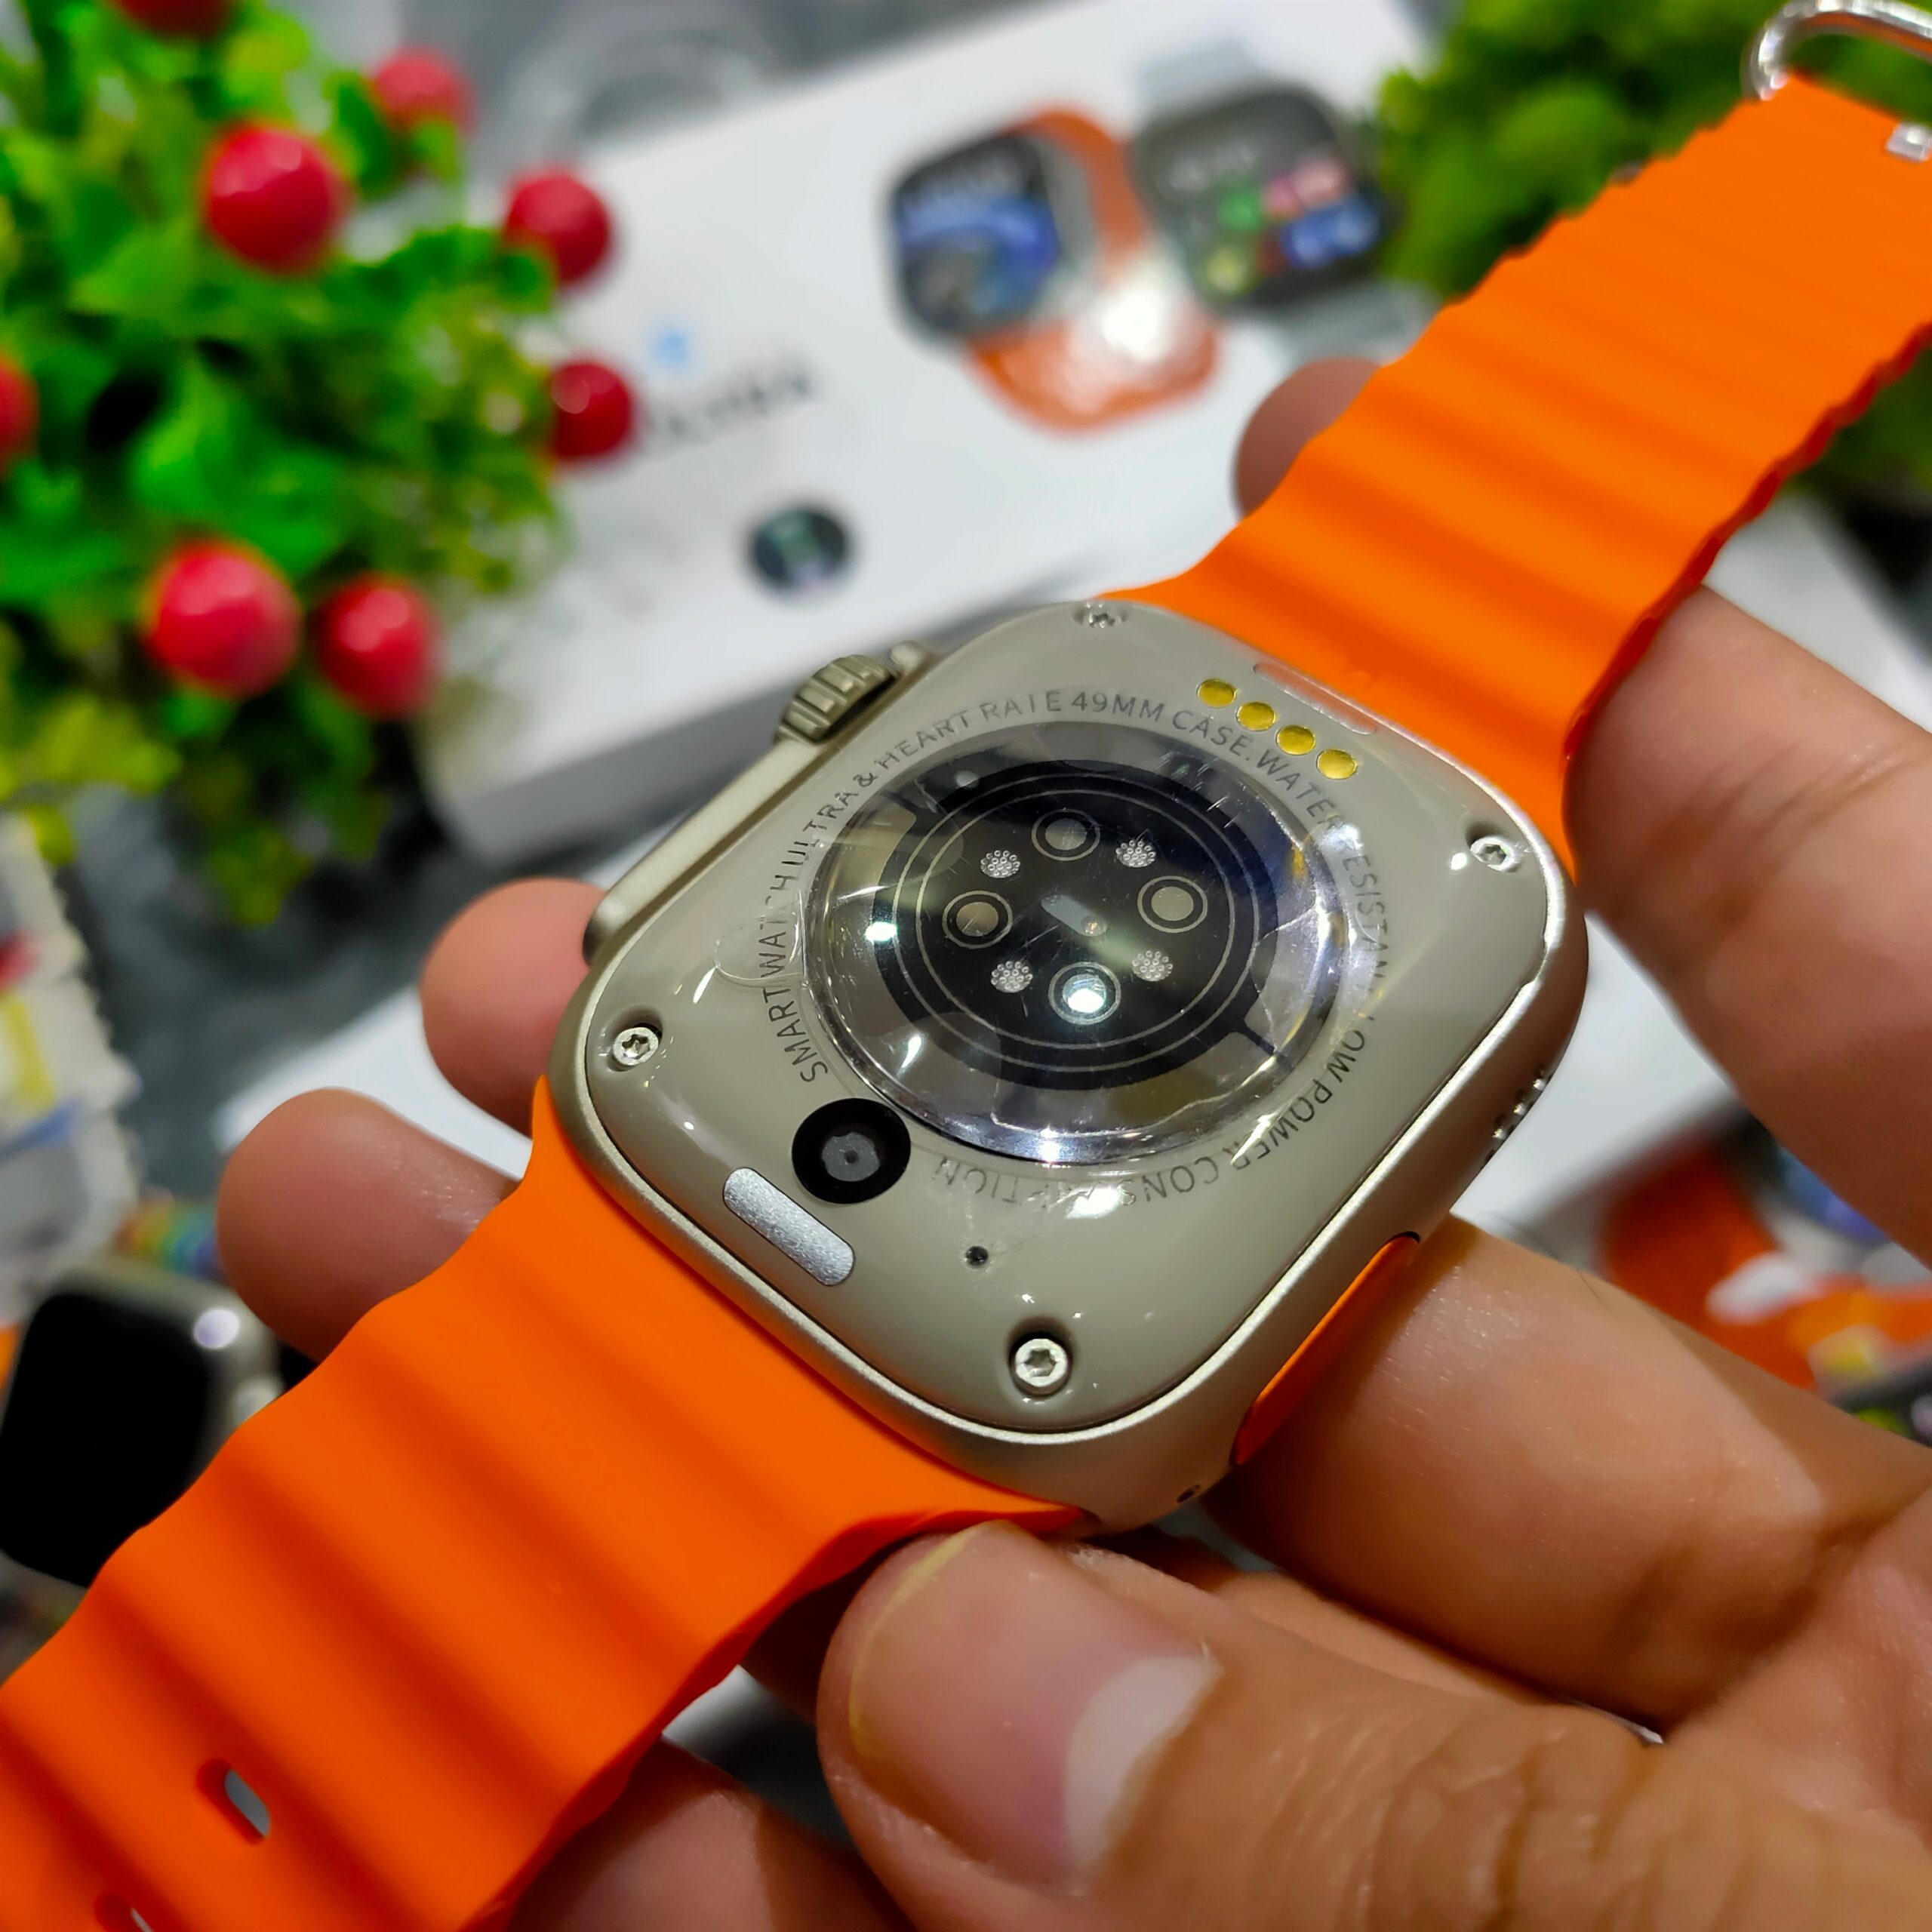 X8 Ultra 4G Smart Watch Design & Build